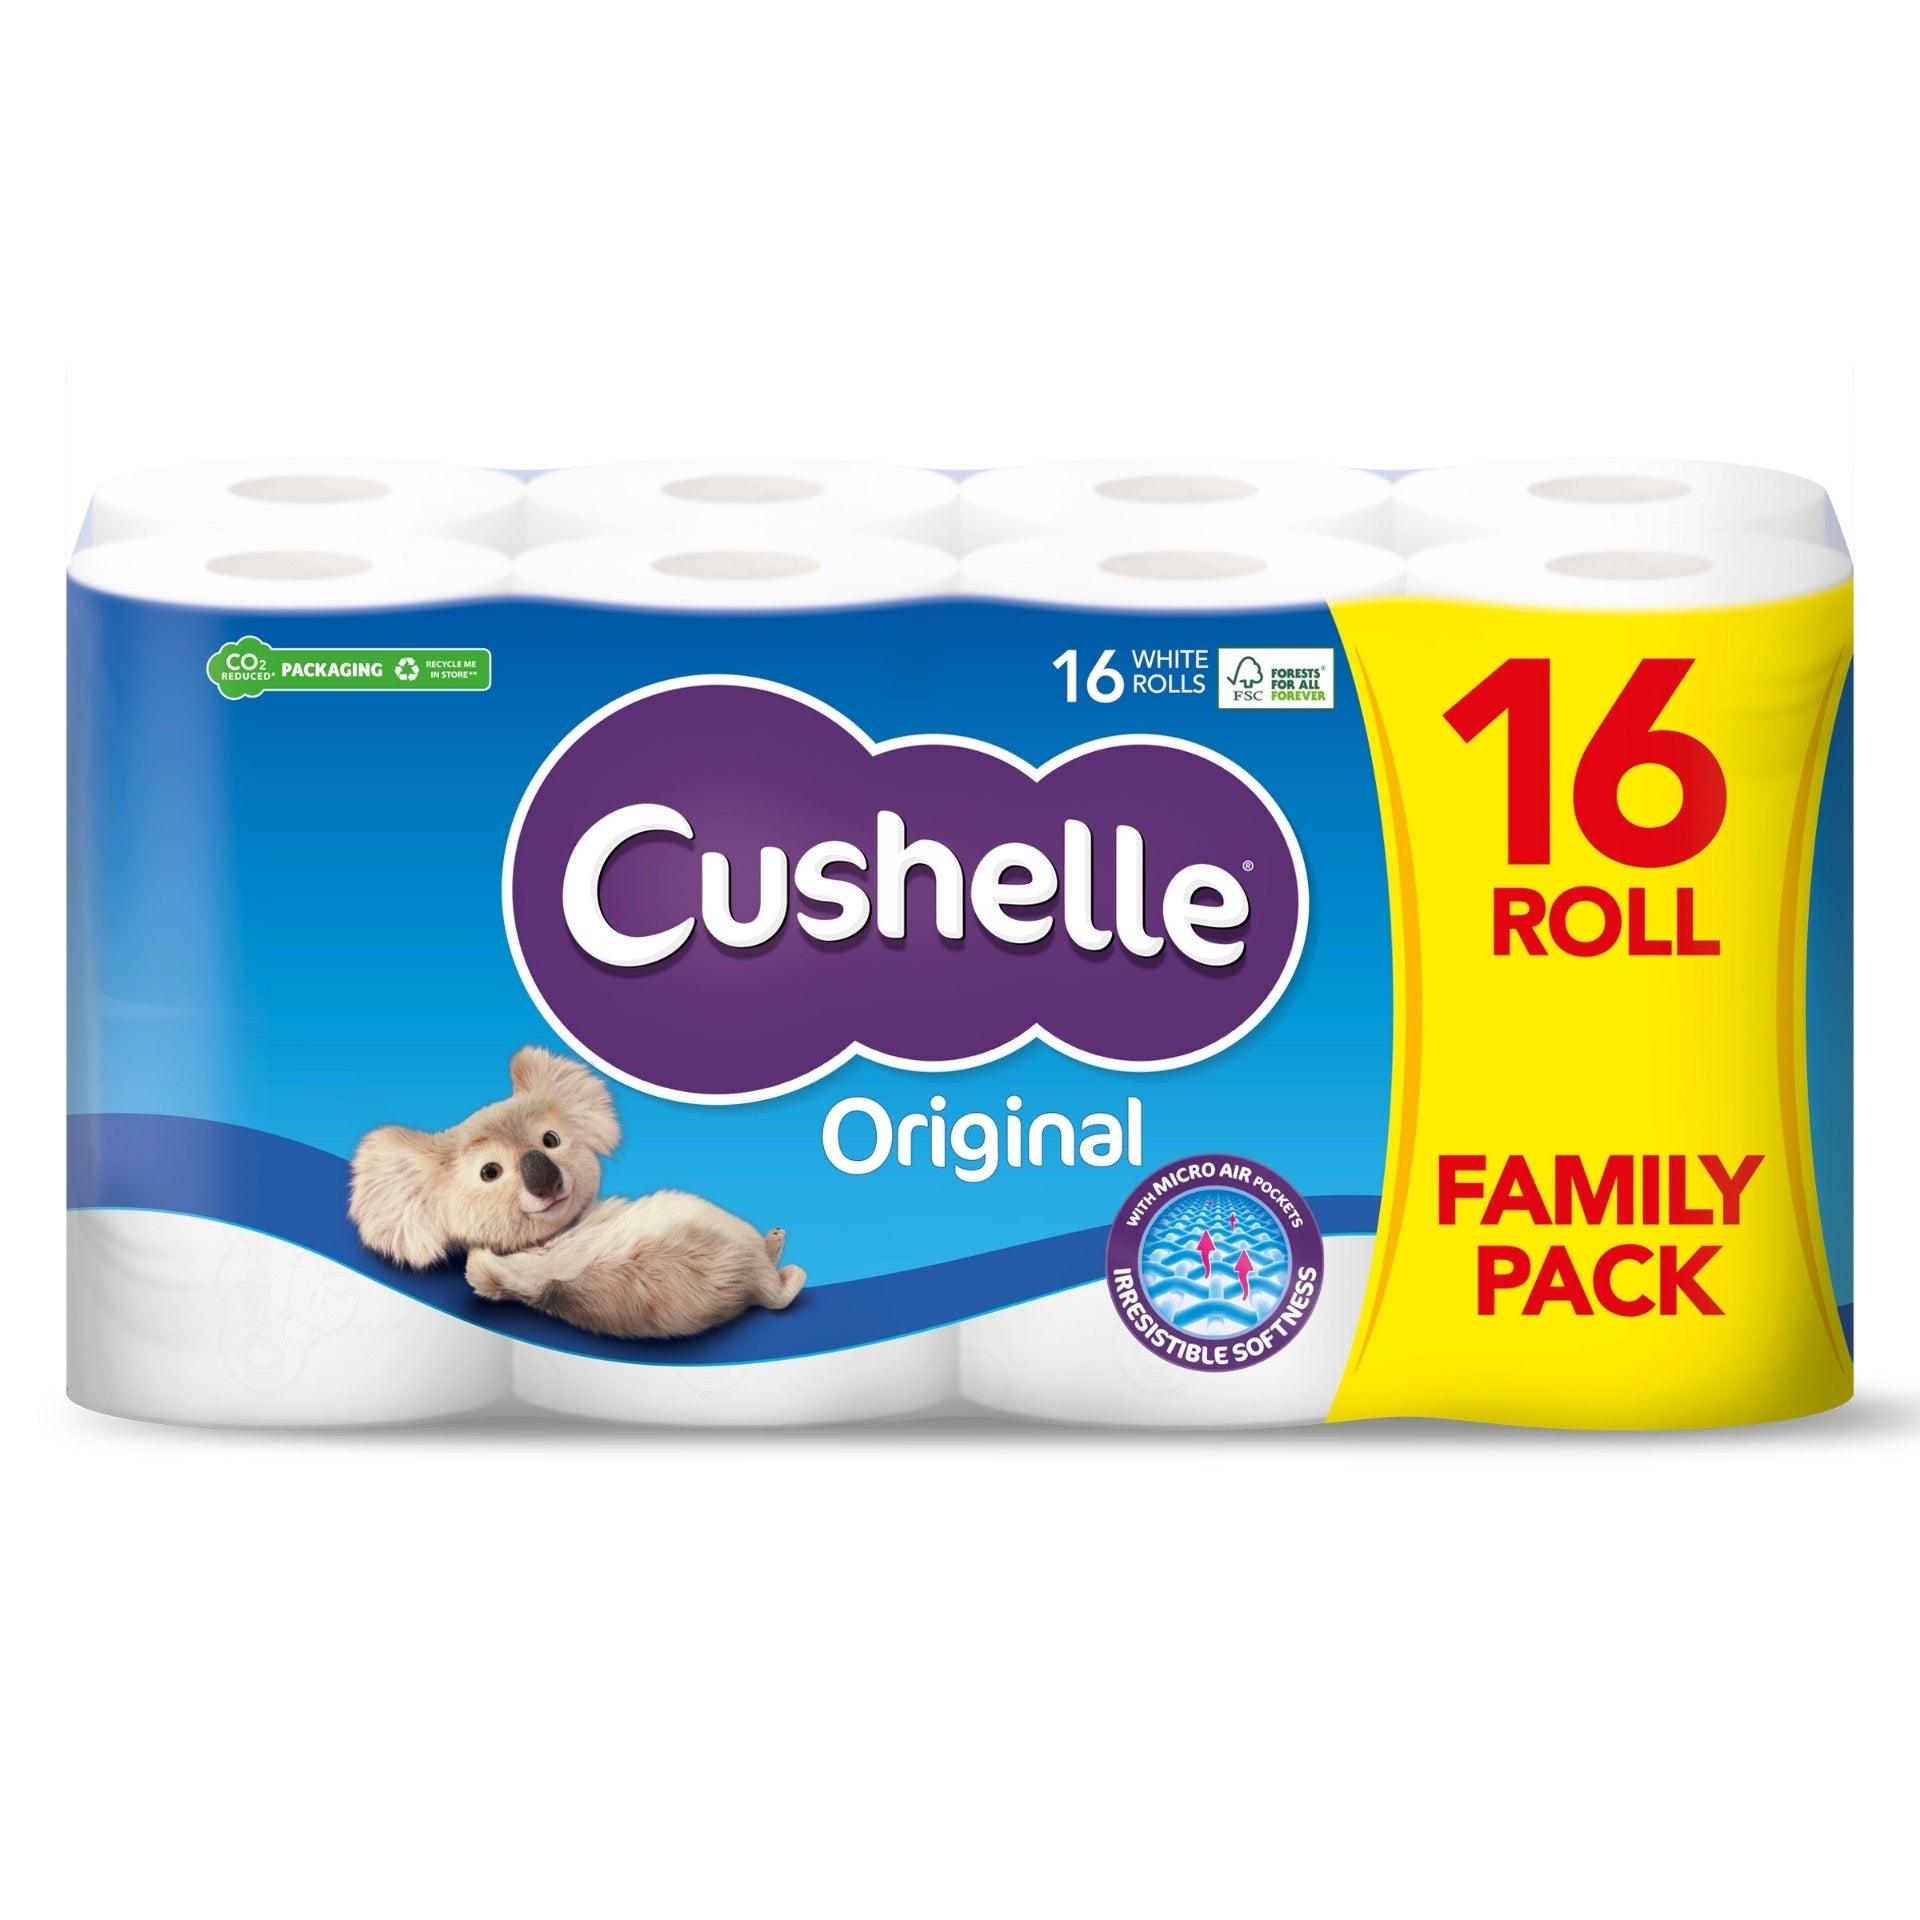 Cushelle Toilet Roll - White Family Pack (16 Pack) - Vending Superstore